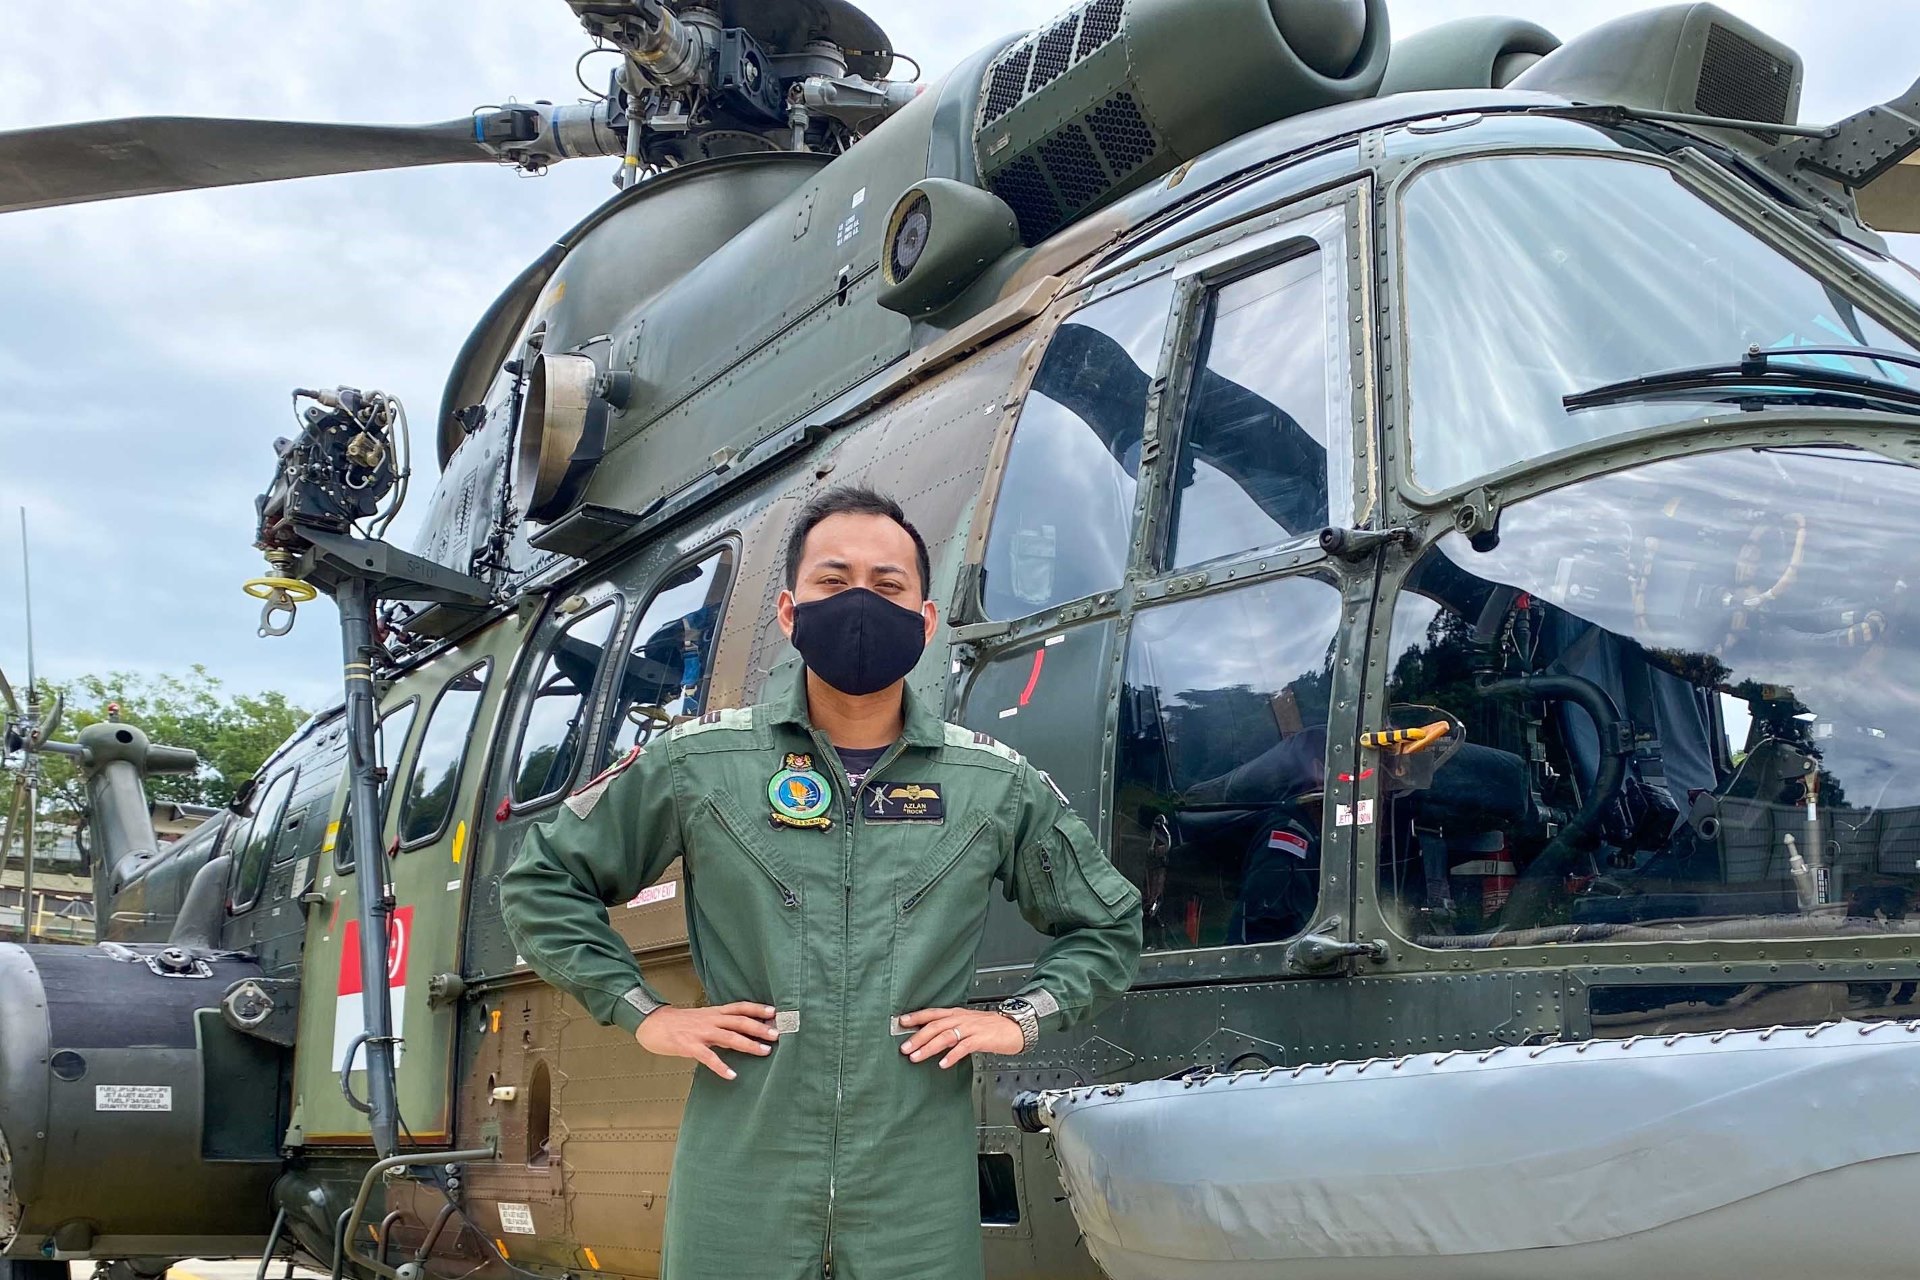 CPT Azlan flies high as a Super Puma pilot